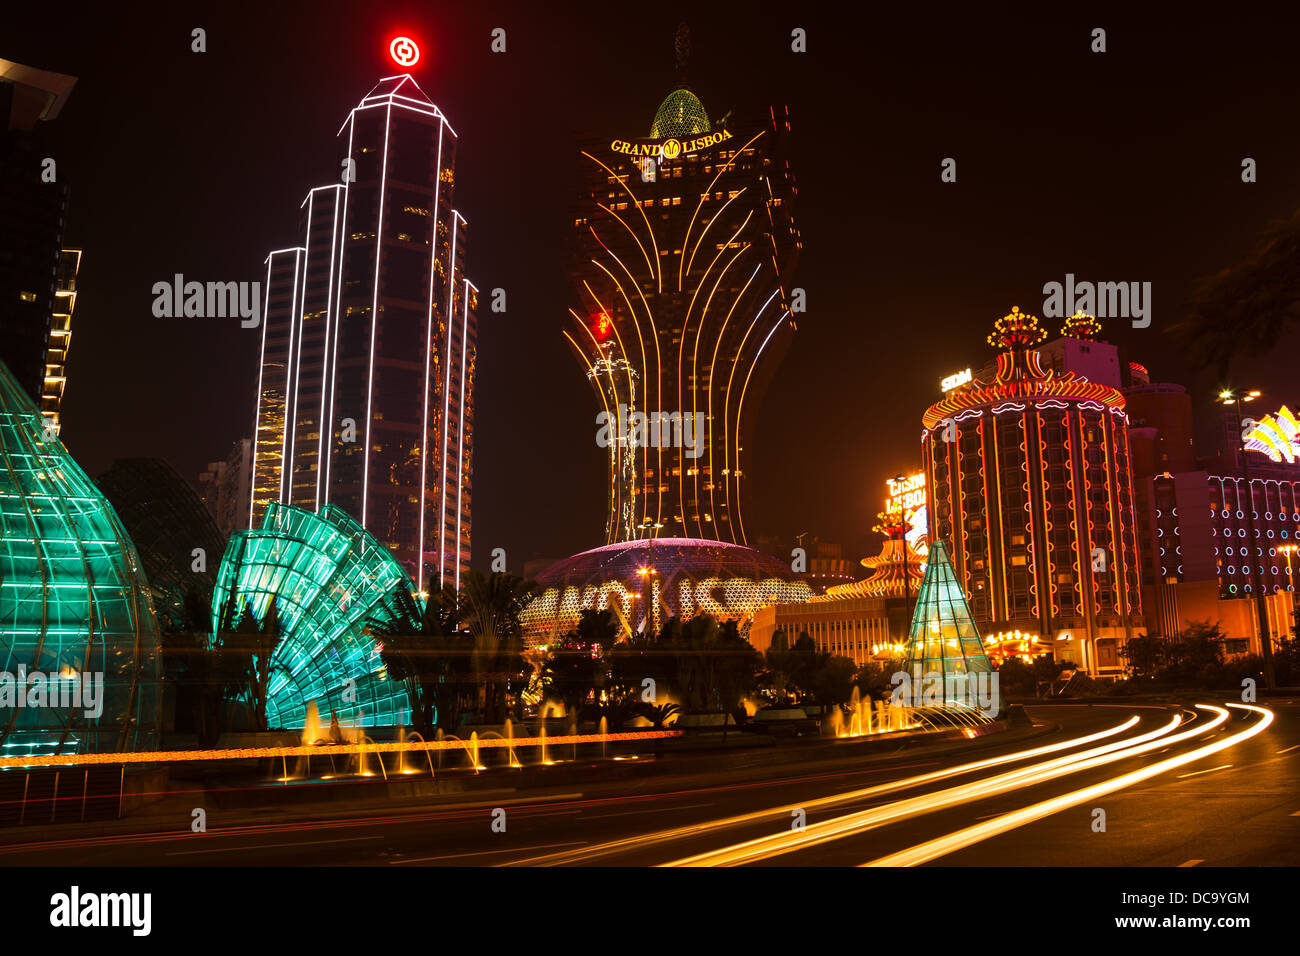 Vue de nuit sur le Grand Lisboa casino à Macao, Chine. Banque D'Images